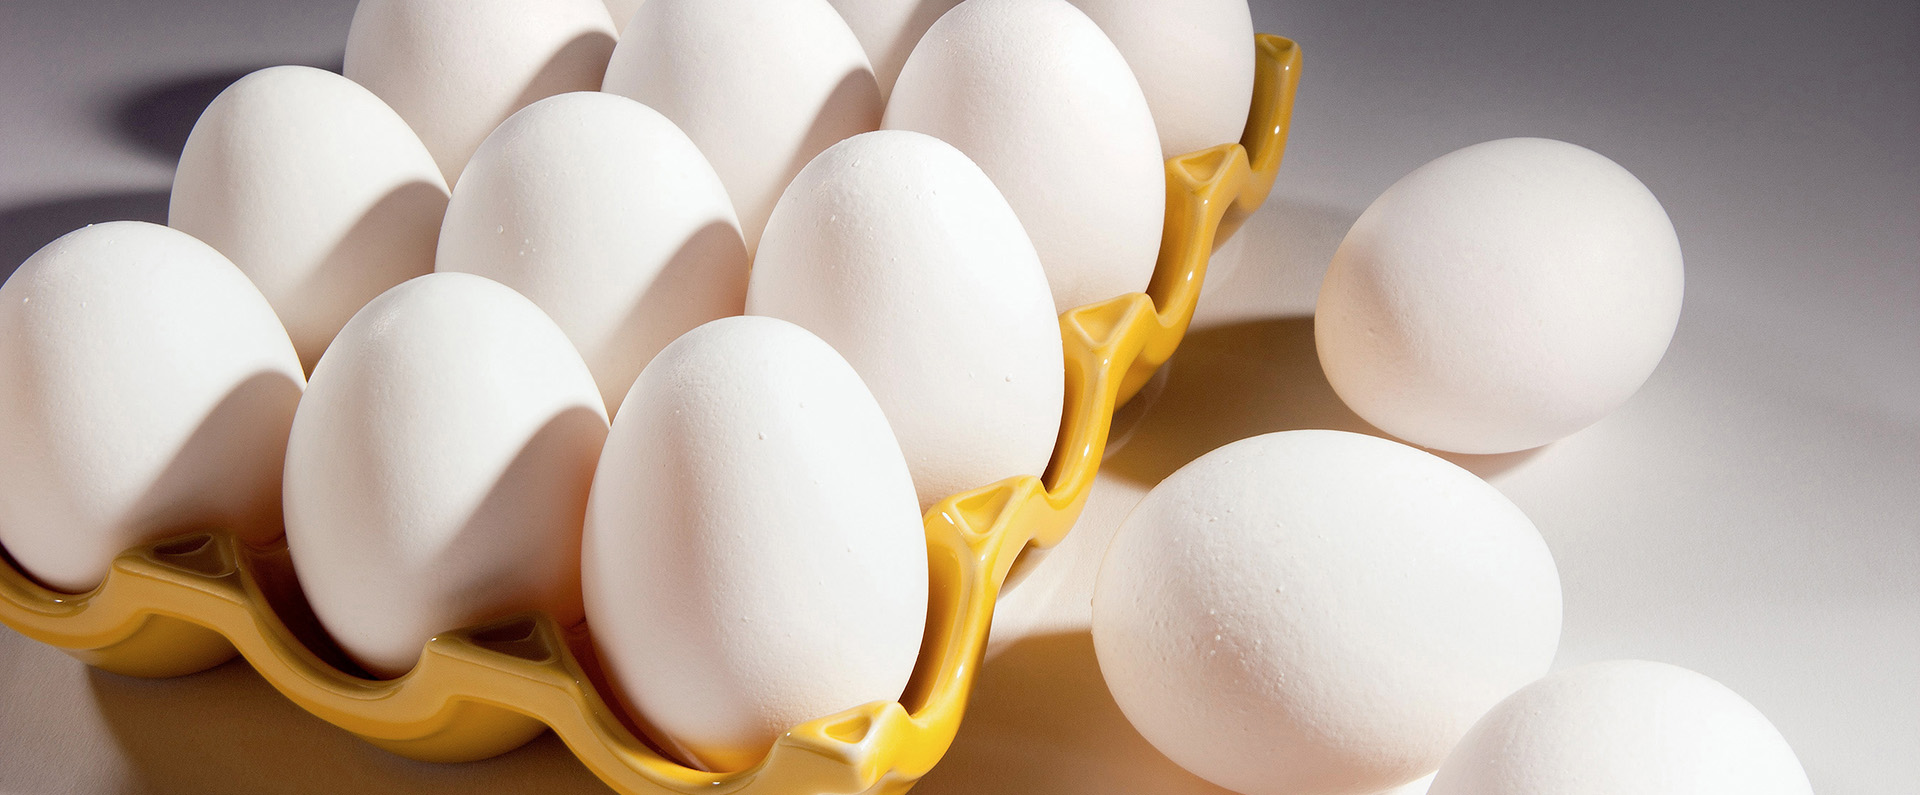 An open carton of a dozen eggs